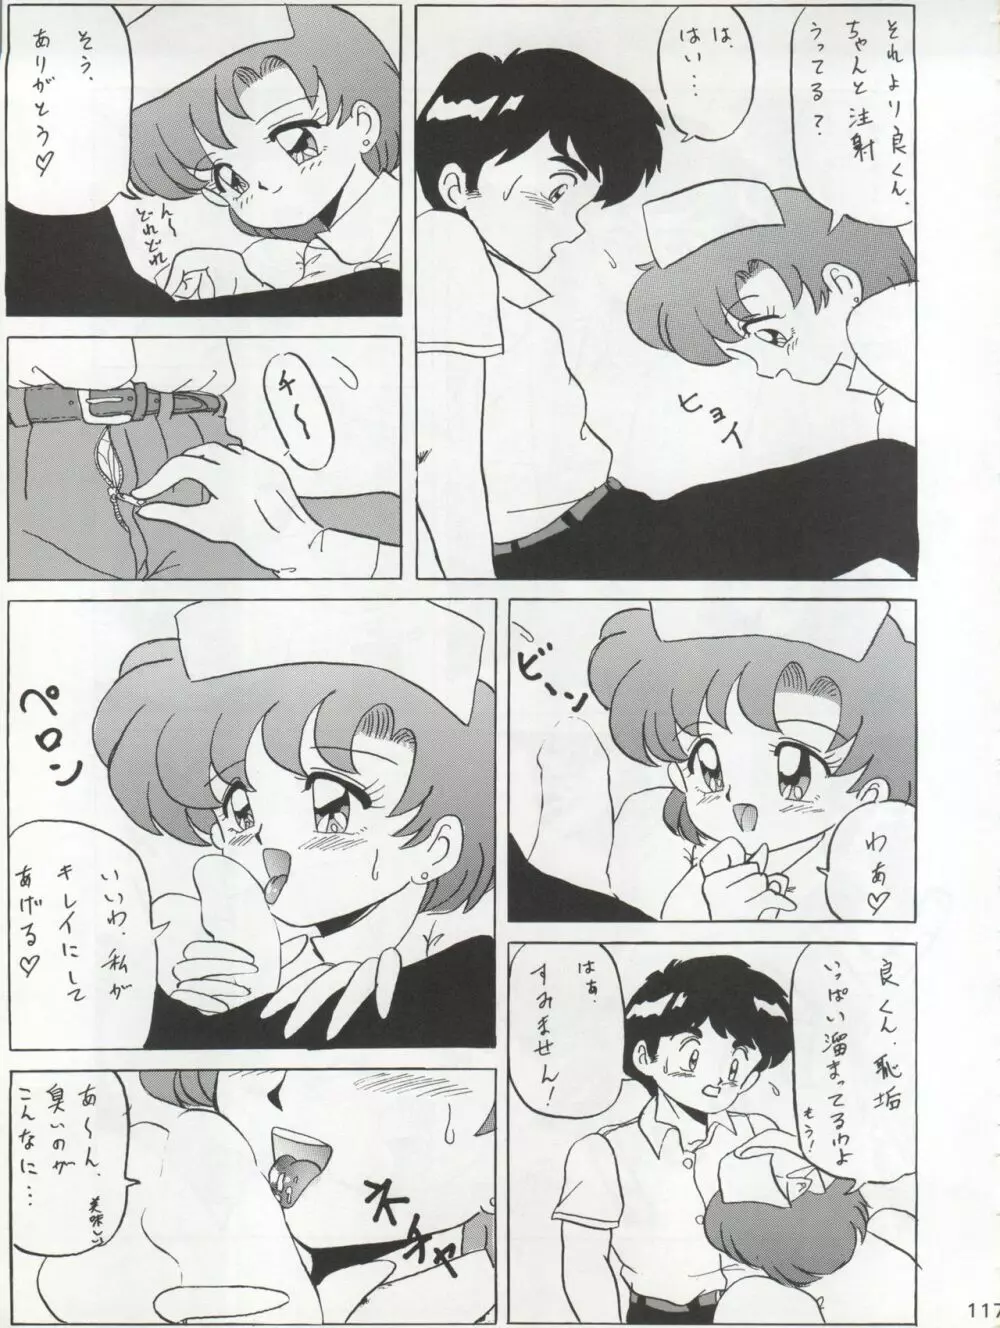 KATZE 7 上巻 - page118